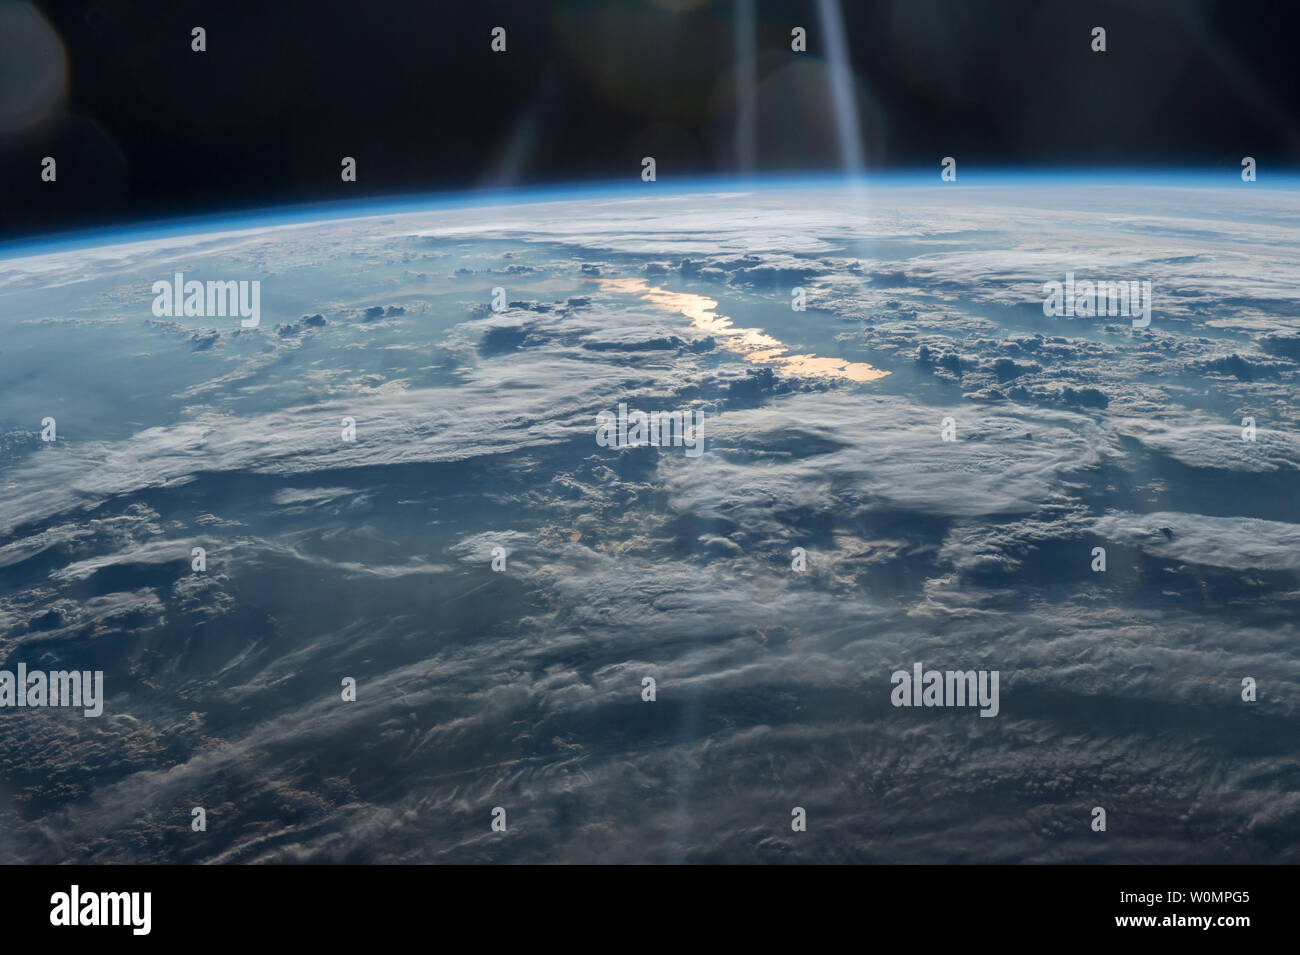 Questa splendida immagine della Terra, ripresa dall'equipaggio della  spedizione 47 il 31 maggio 2016, dalla Stazione spaziale Internazionale  guarda dalla cina nord-occidentale sul fondo del Kazakistan orientale. Il  grande lago del Kazakhstan